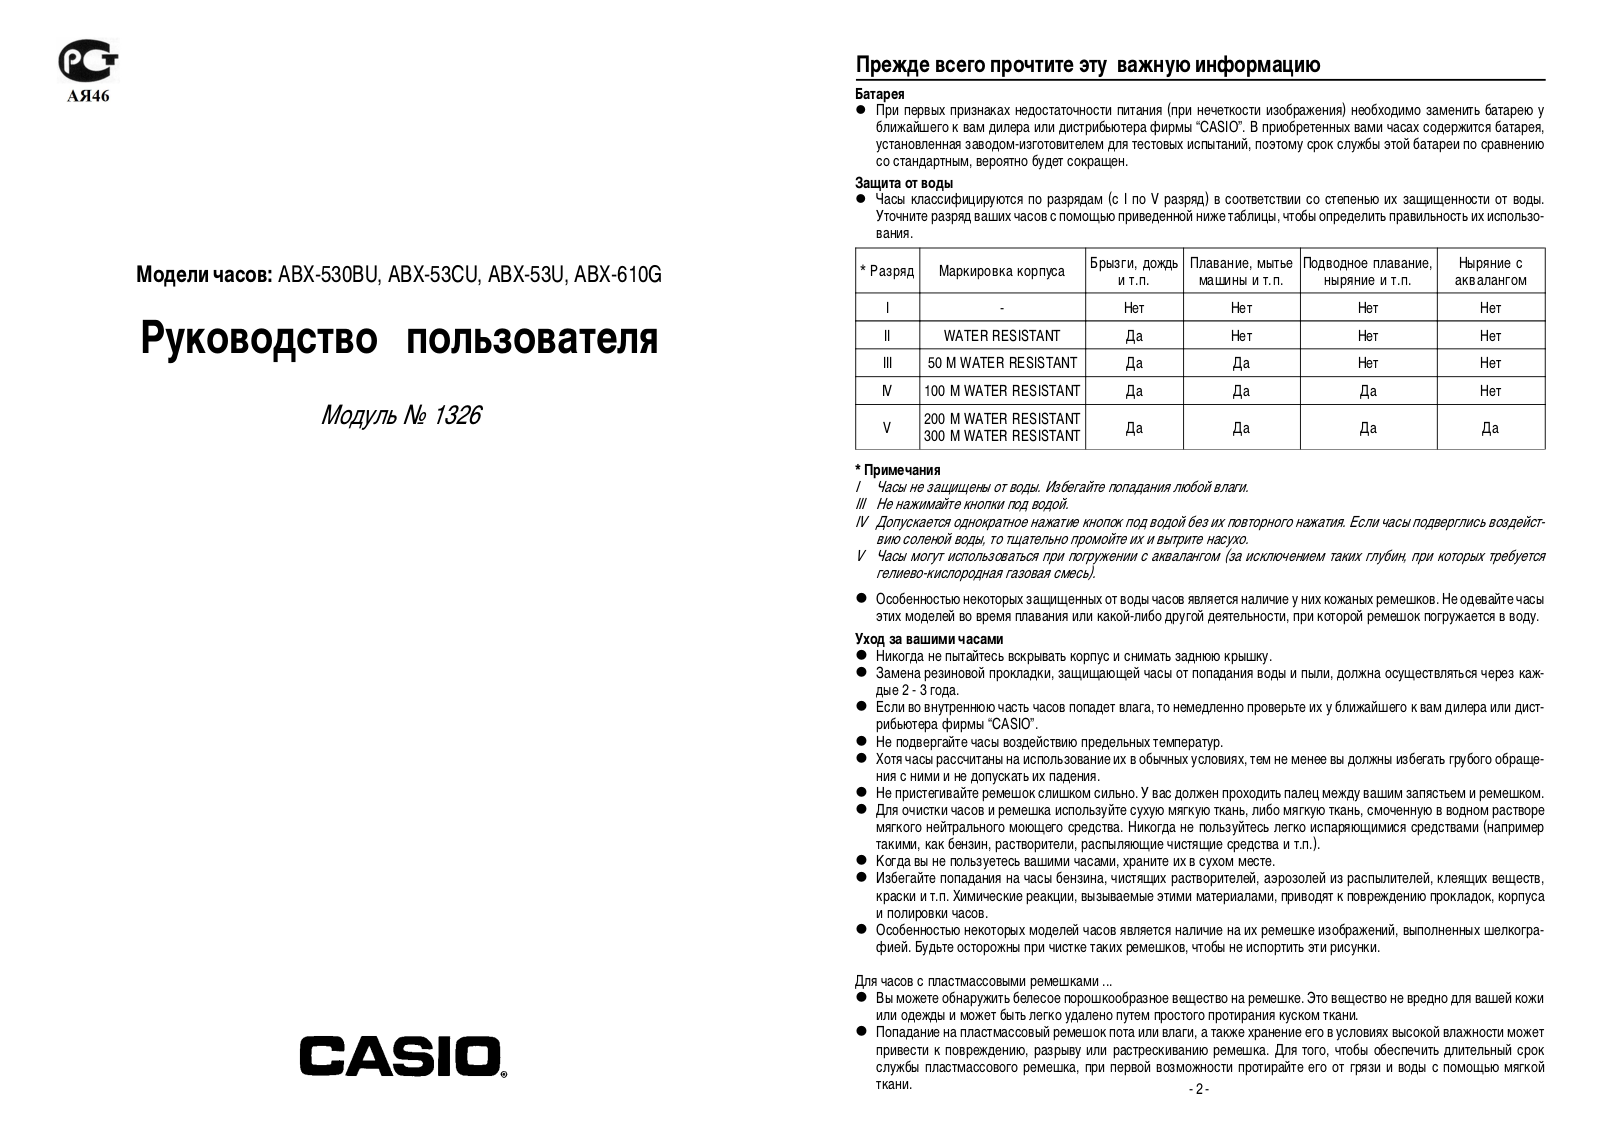 Casio 1326 User Manual